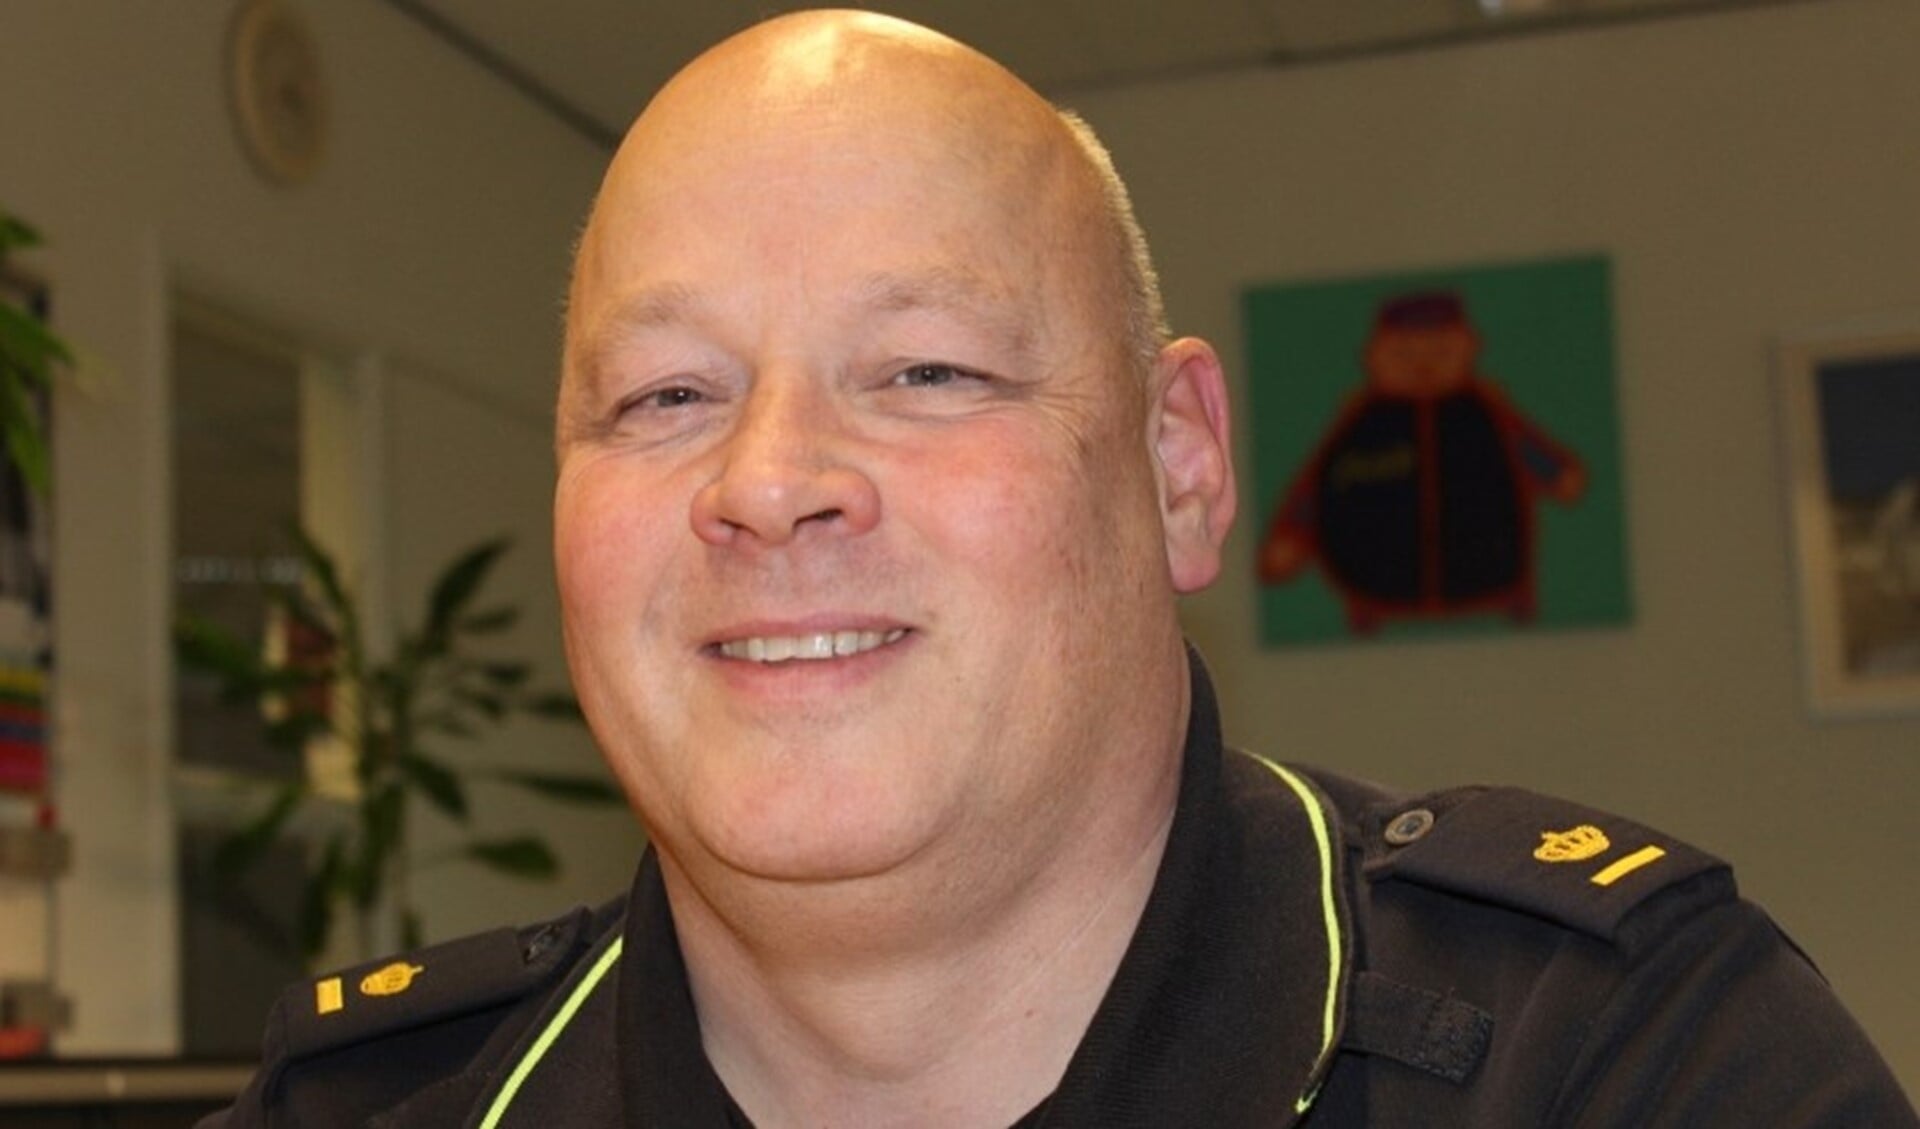 De - inmiddels - voormalig teamchef van politiebureau Leidschendam-Voorburg (archieffoto DJ).